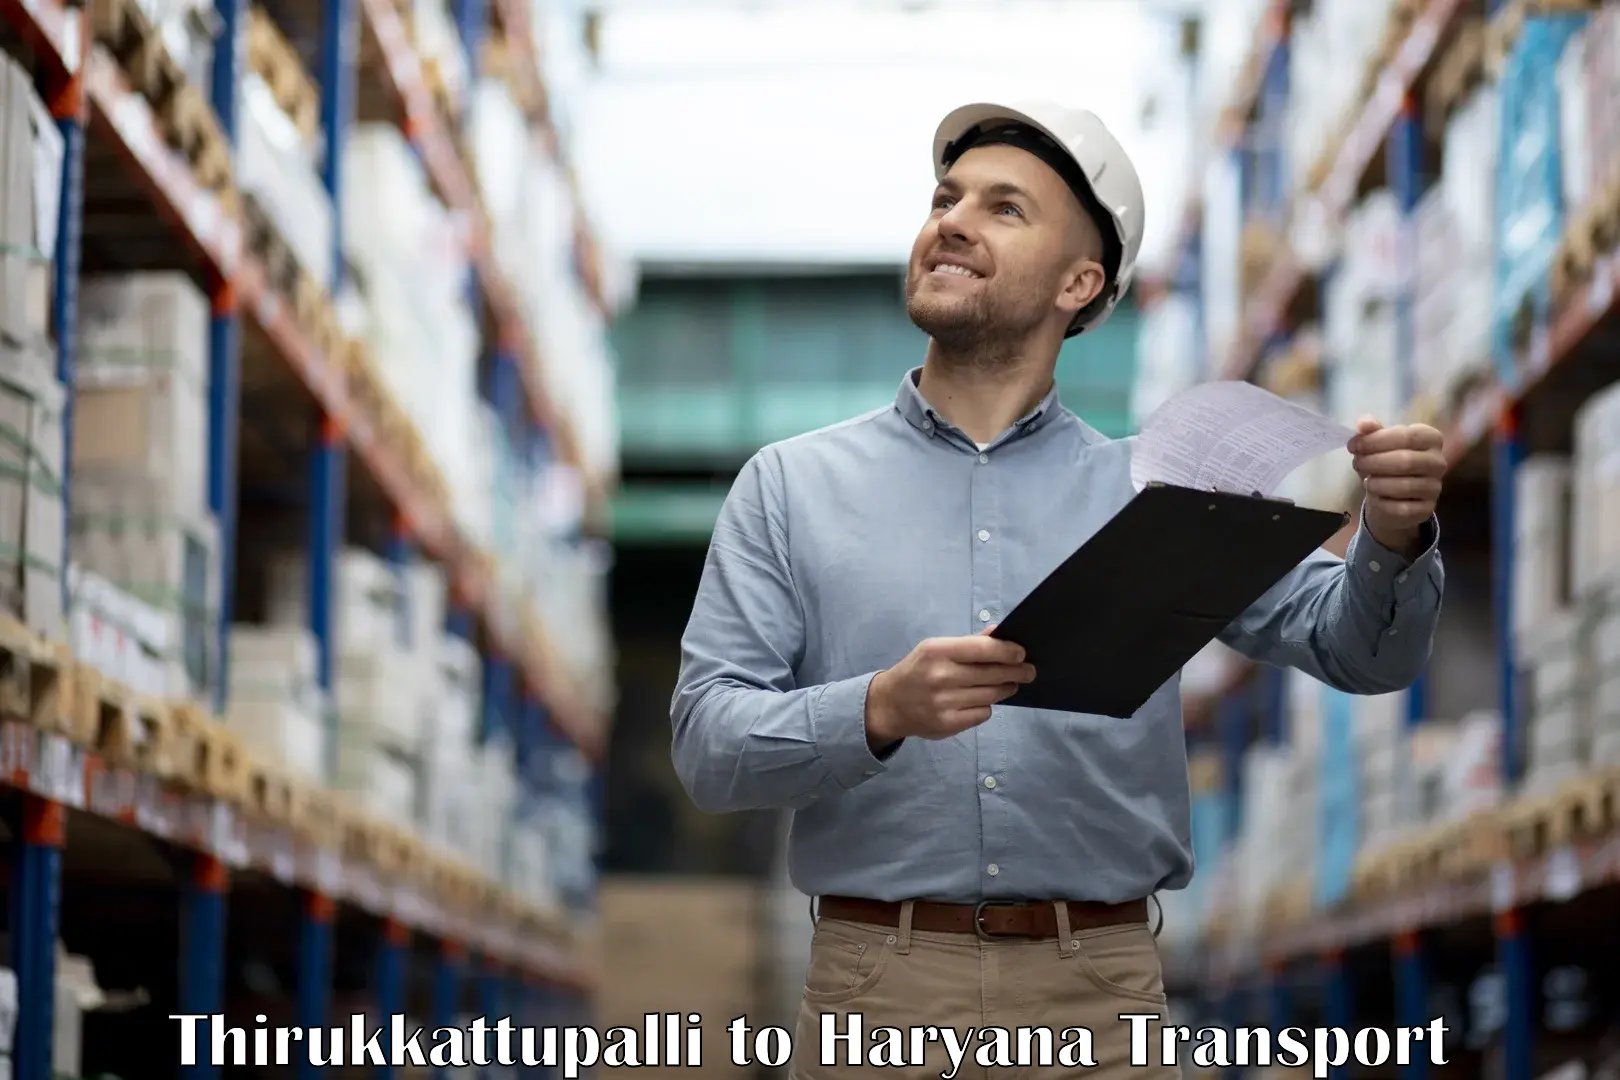 Shipping partner Thirukkattupalli to Bhiwani